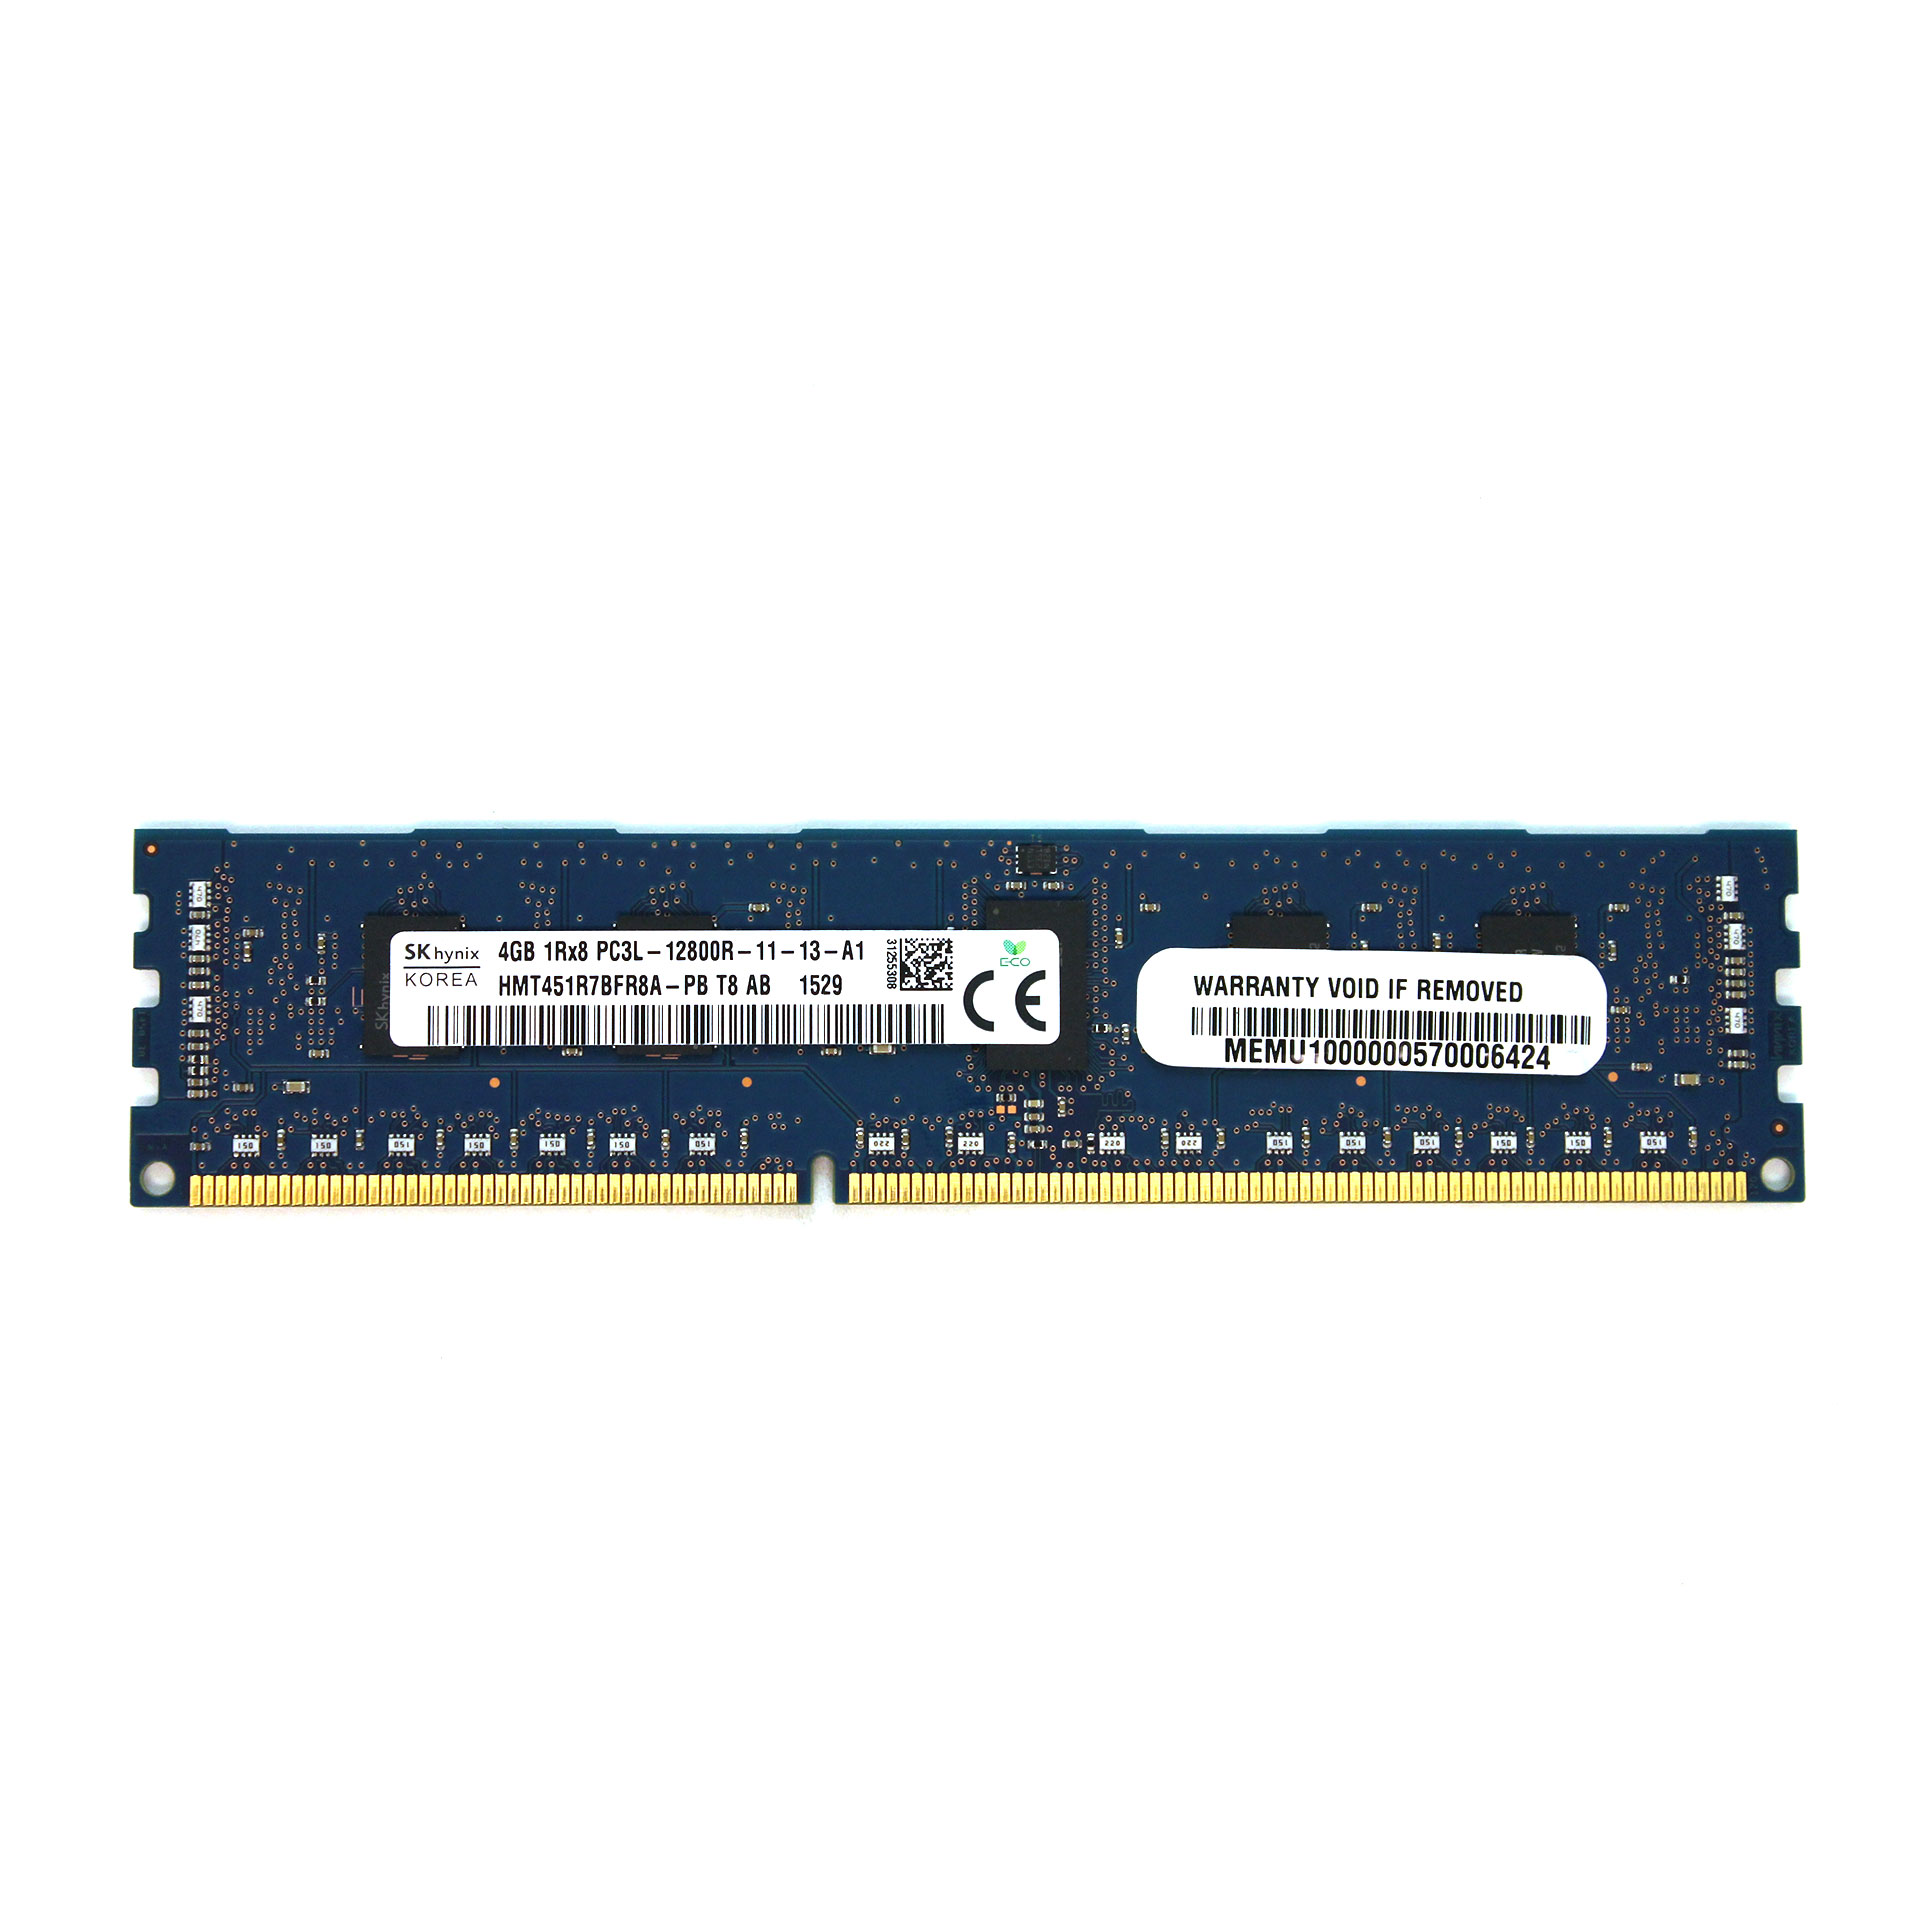 Supermicro/Hynix 4GB RAM DDR3 PC3L-12800R ECC HMT451R7BFR8A-PB